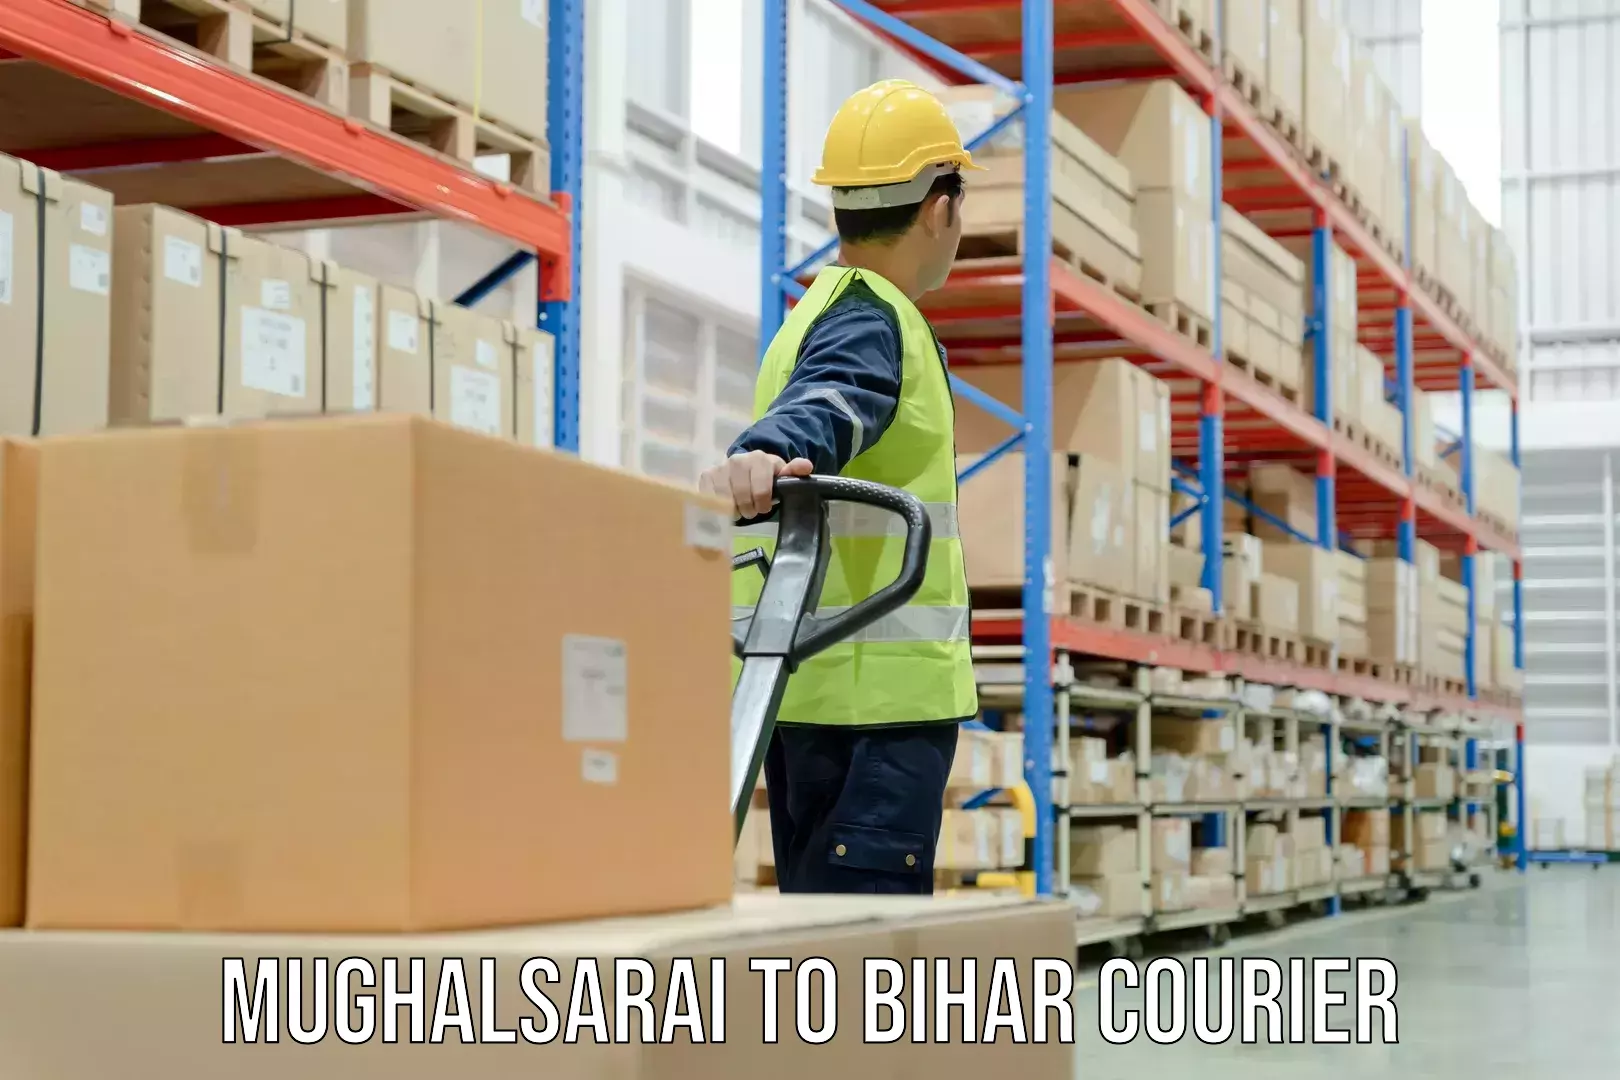 Urban courier service Mughalsarai to Bihar